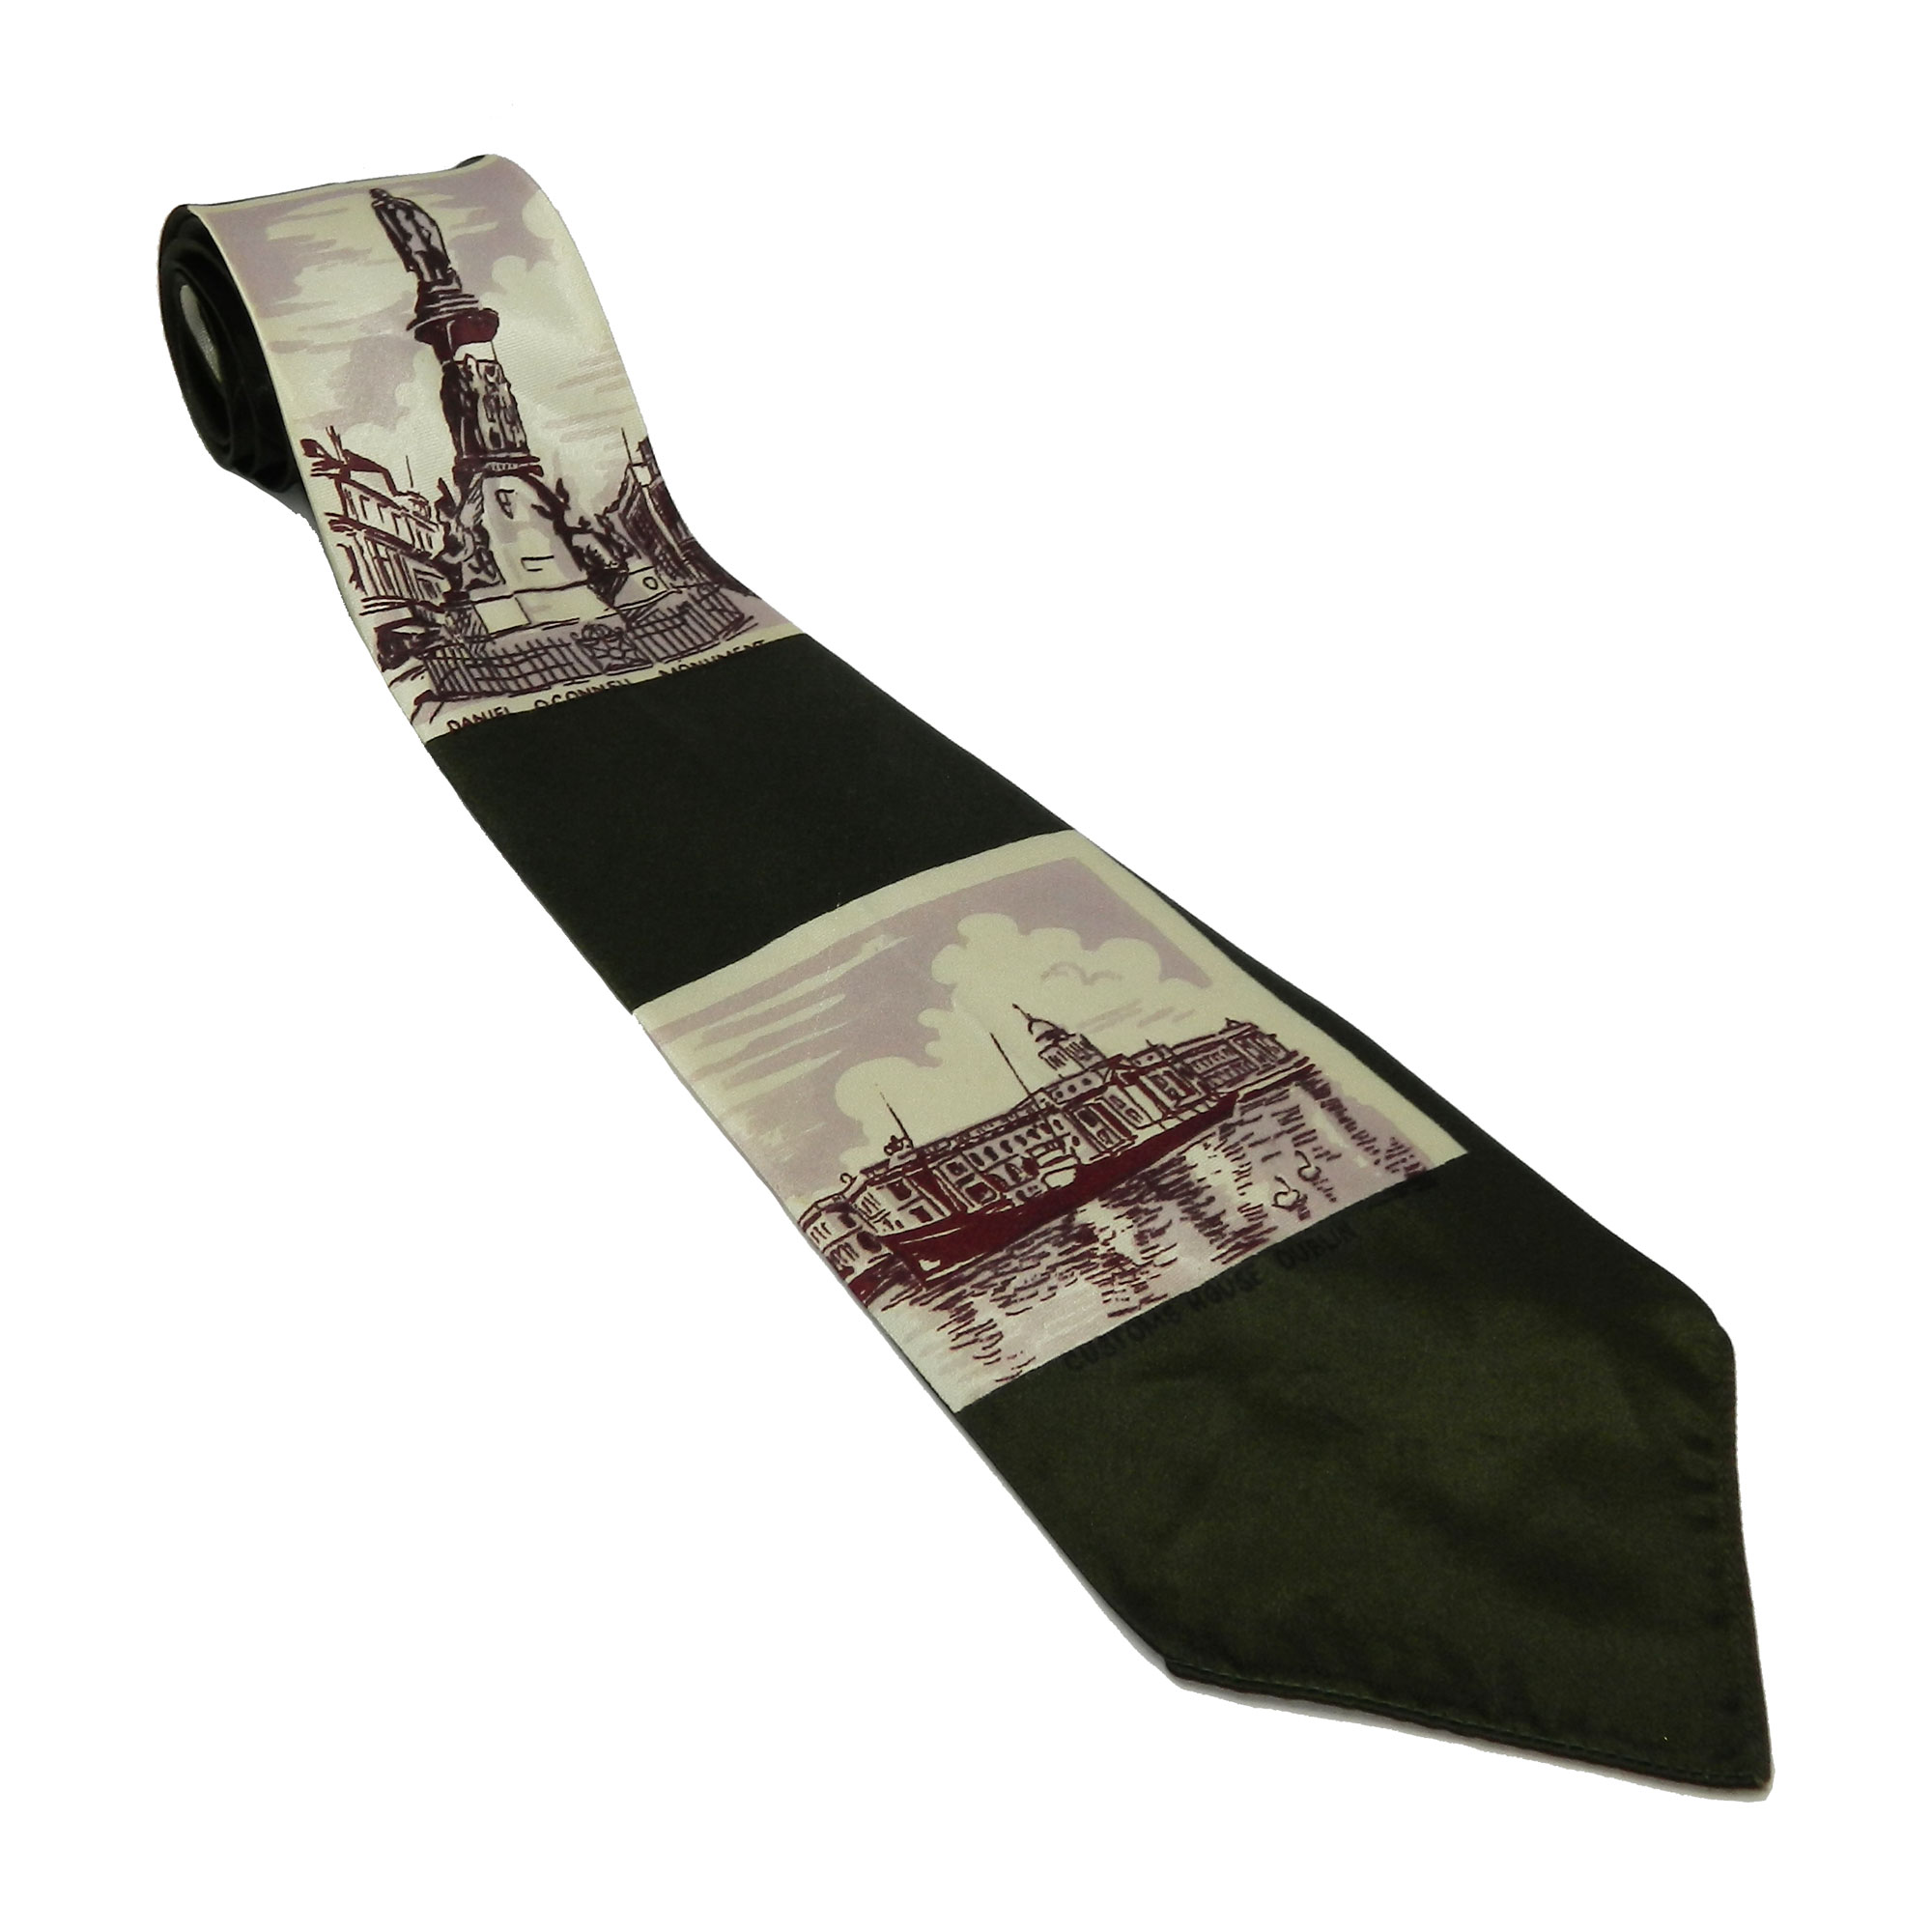 1940s Irish souvenir tie